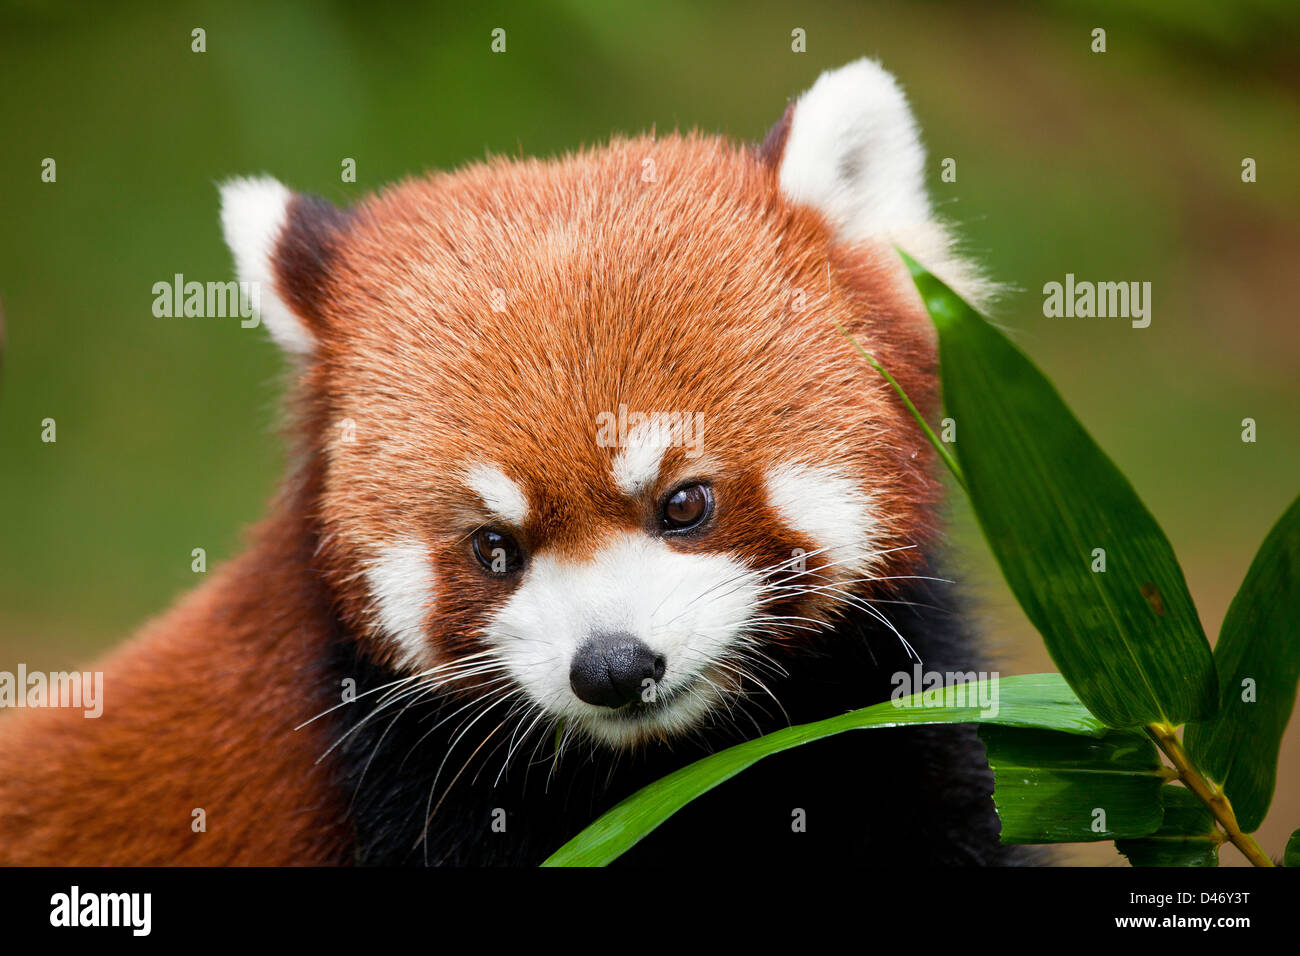 Le Petit Panda, Ailurus fulgens, ou «lumineux cat', est un petit mammifère arboricole et la seule espèce du genre Ailurus. La Chine. Banque D'Images